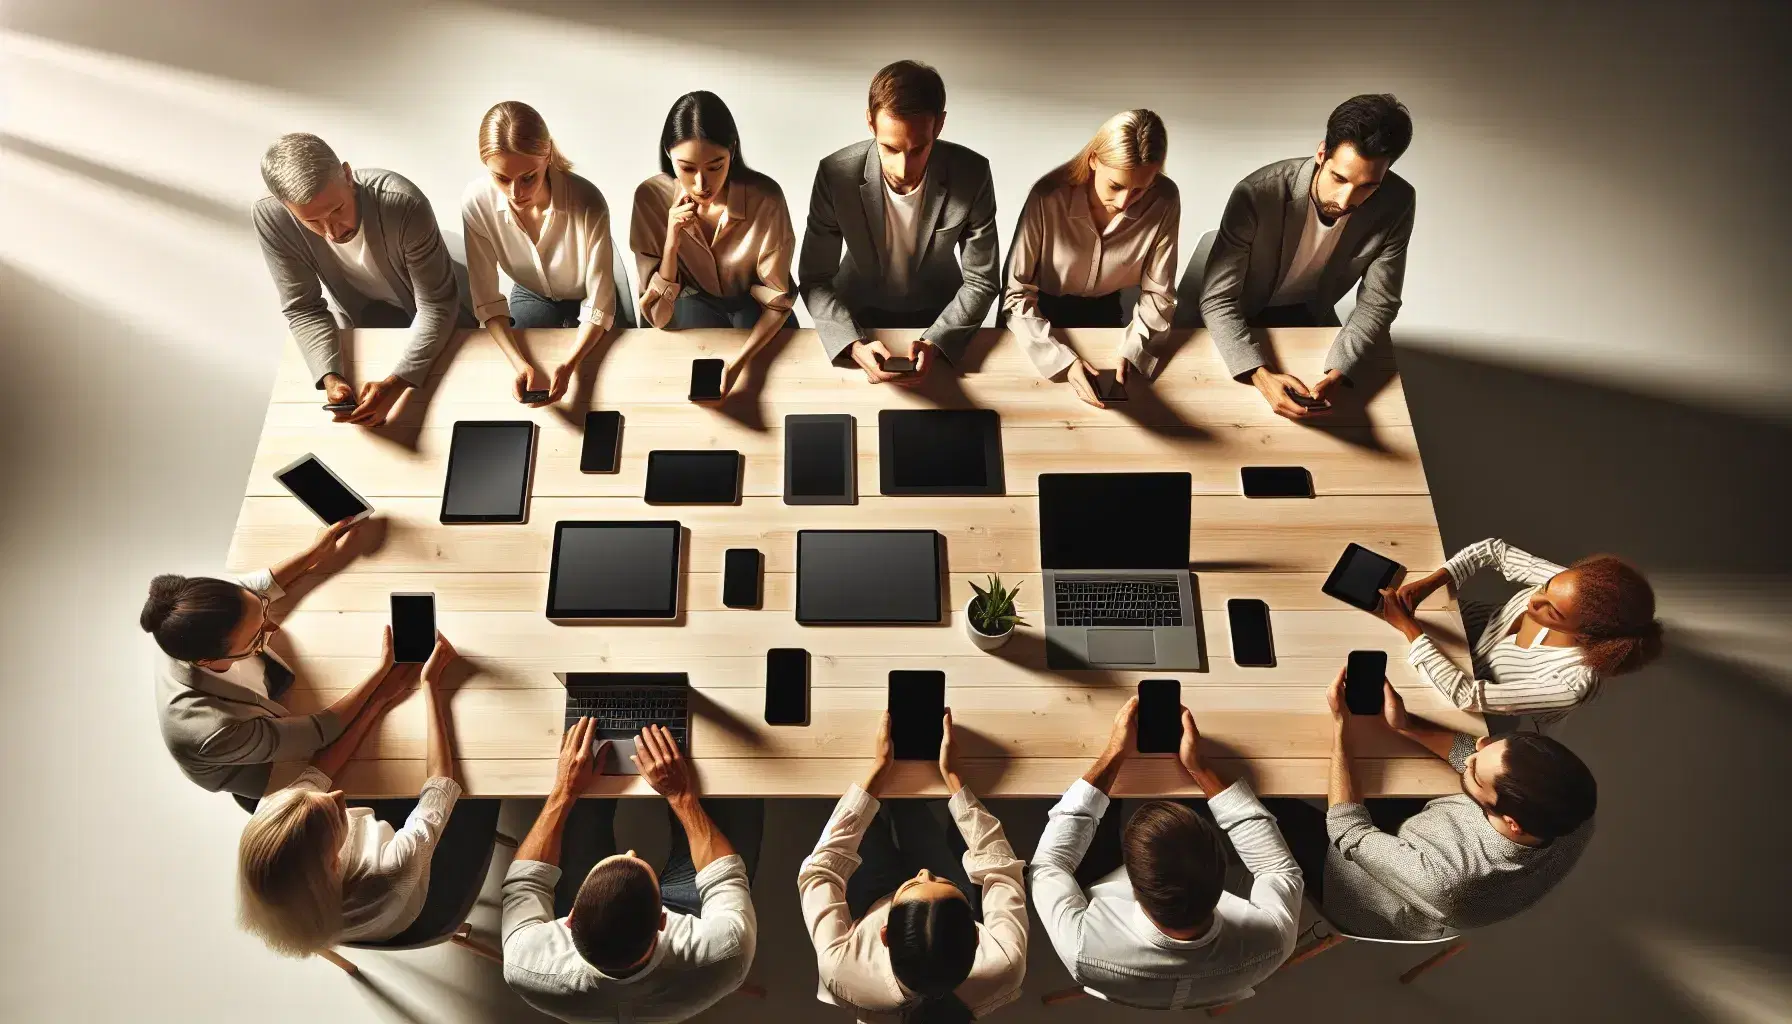 Grupo diverso de personas concentradas en dispositivos electrónicos modernos sobre una mesa de madera en una sala iluminada naturalmente.